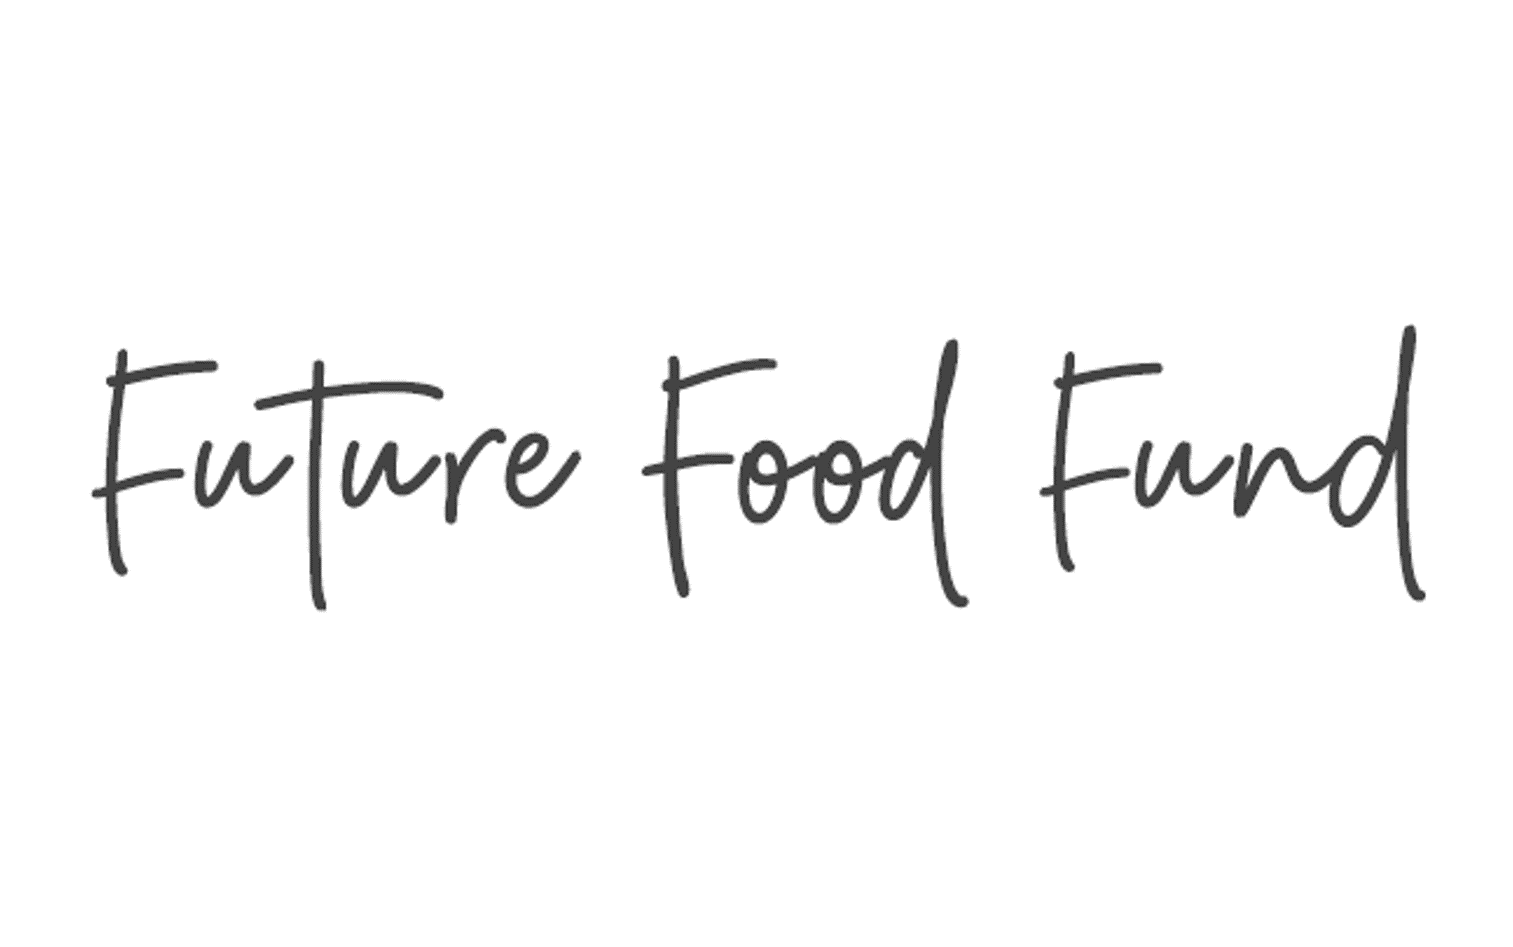 Future Food Fund